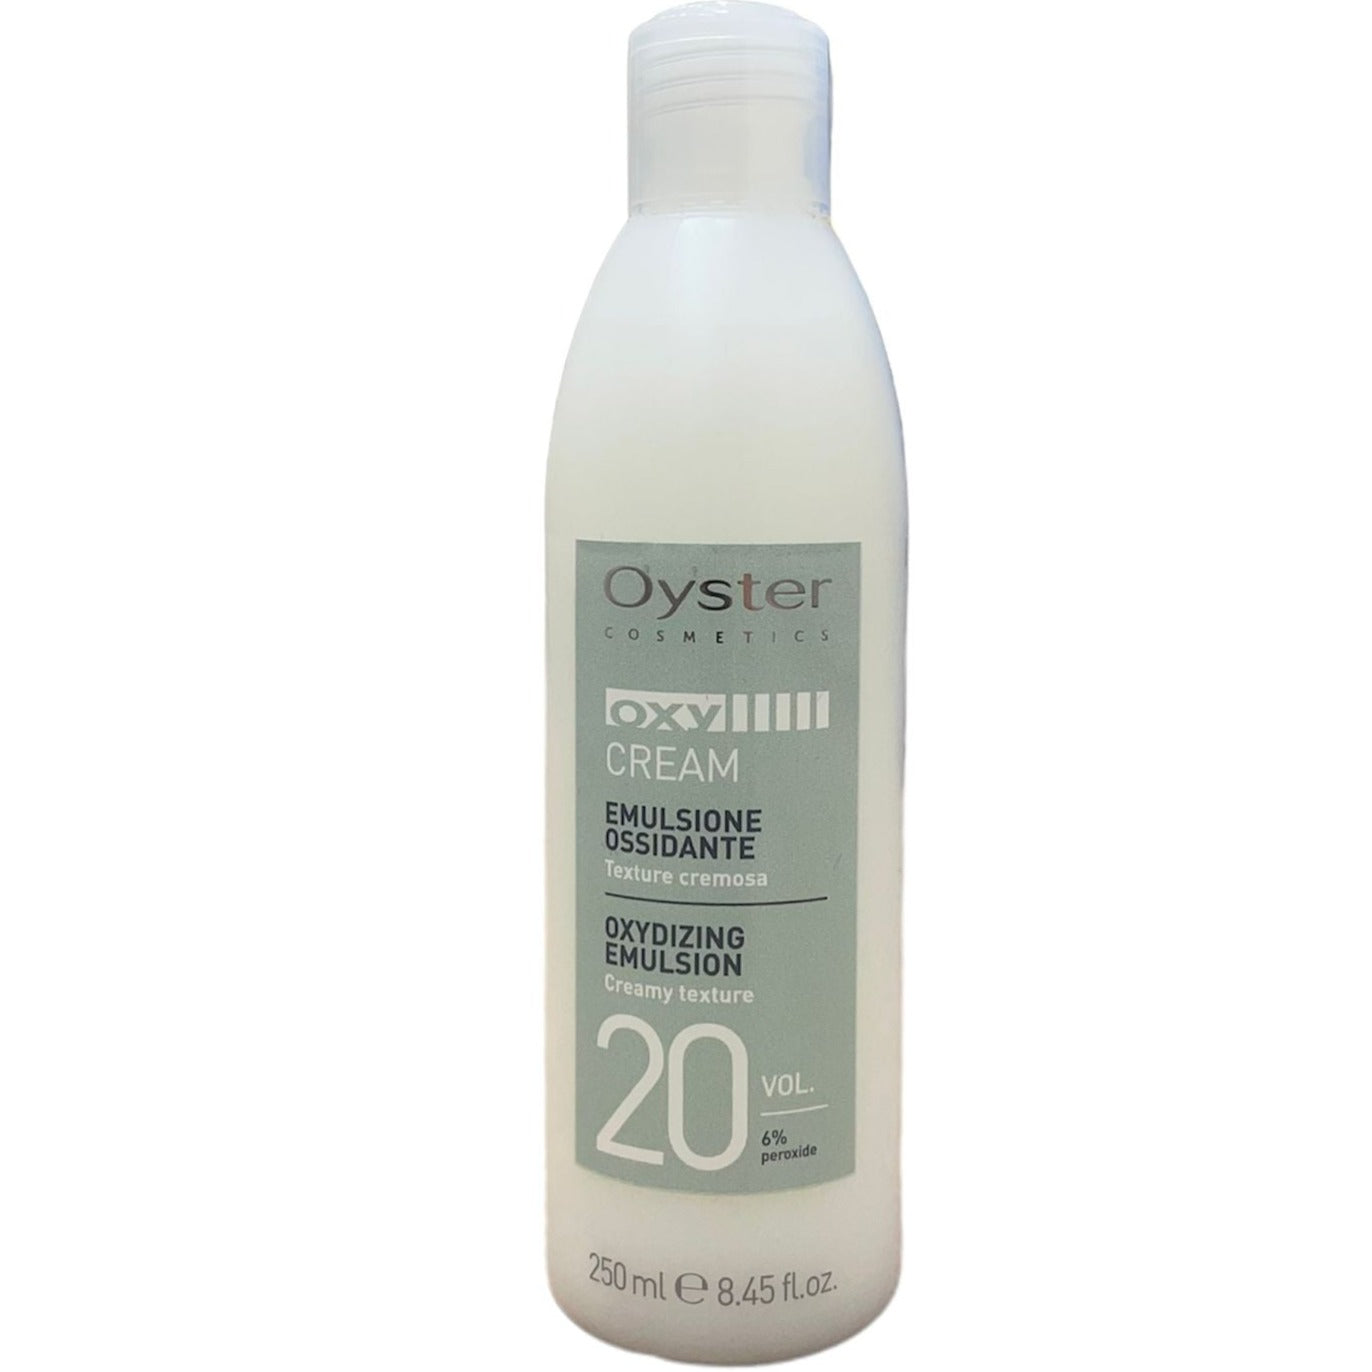 Oyster Emulsione Ossidante 20 Vol. (6%) Oxy Cream